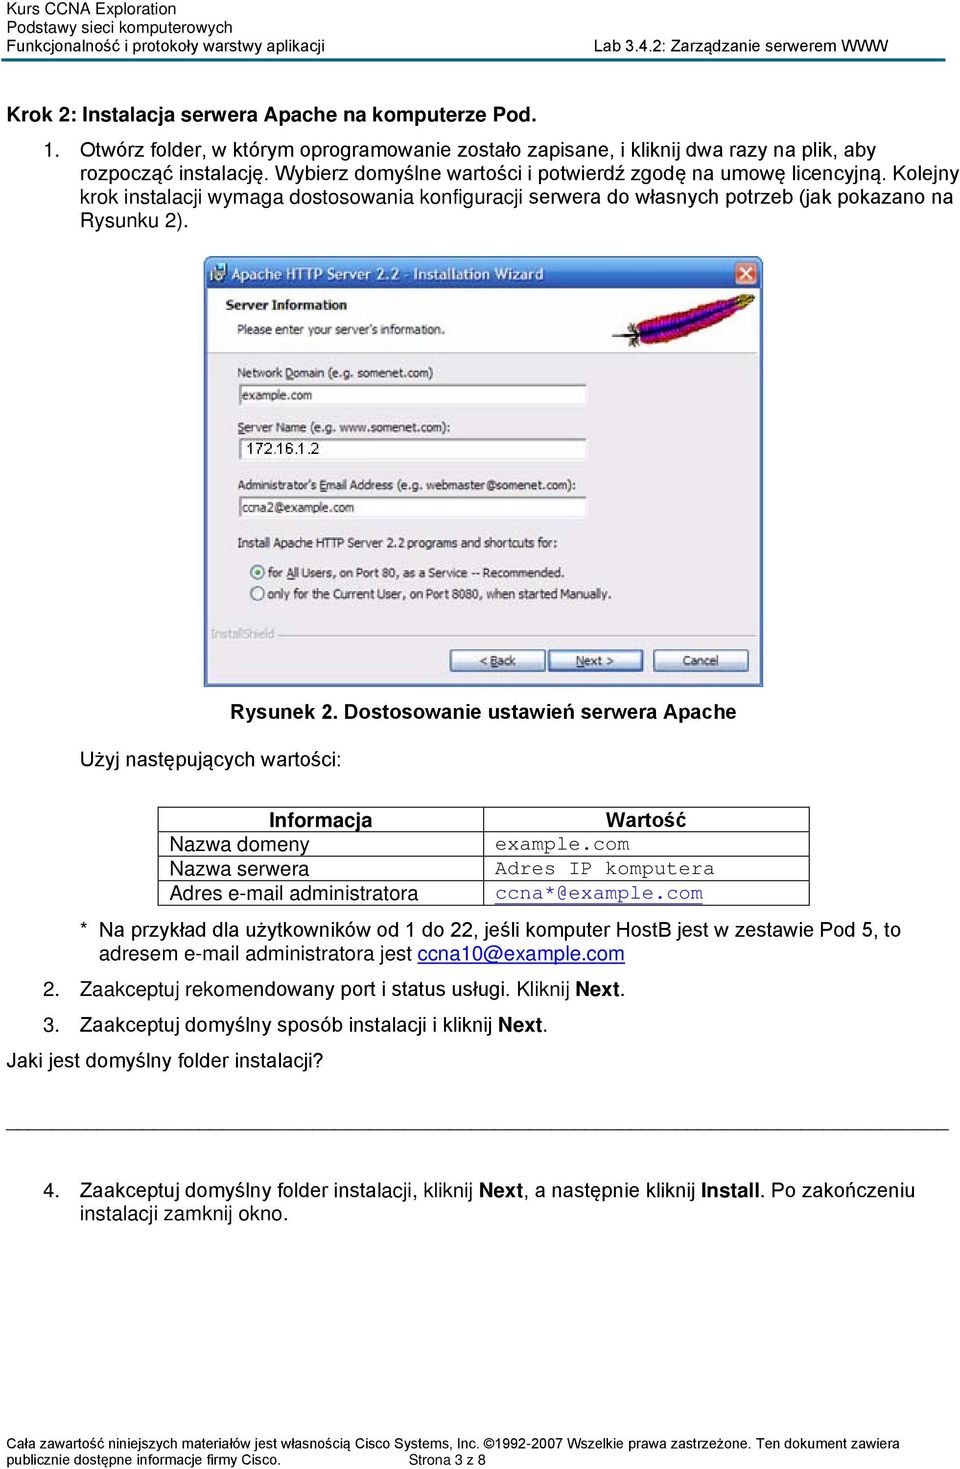 Użyj następujących wartości: Rysunek 2. Dostosowanie ustawień serwera Apache Informacja Nazwa domeny Nazwa serwera Adres e-mail administratora Wartość example.com Adres IP komputera ccna*@example.